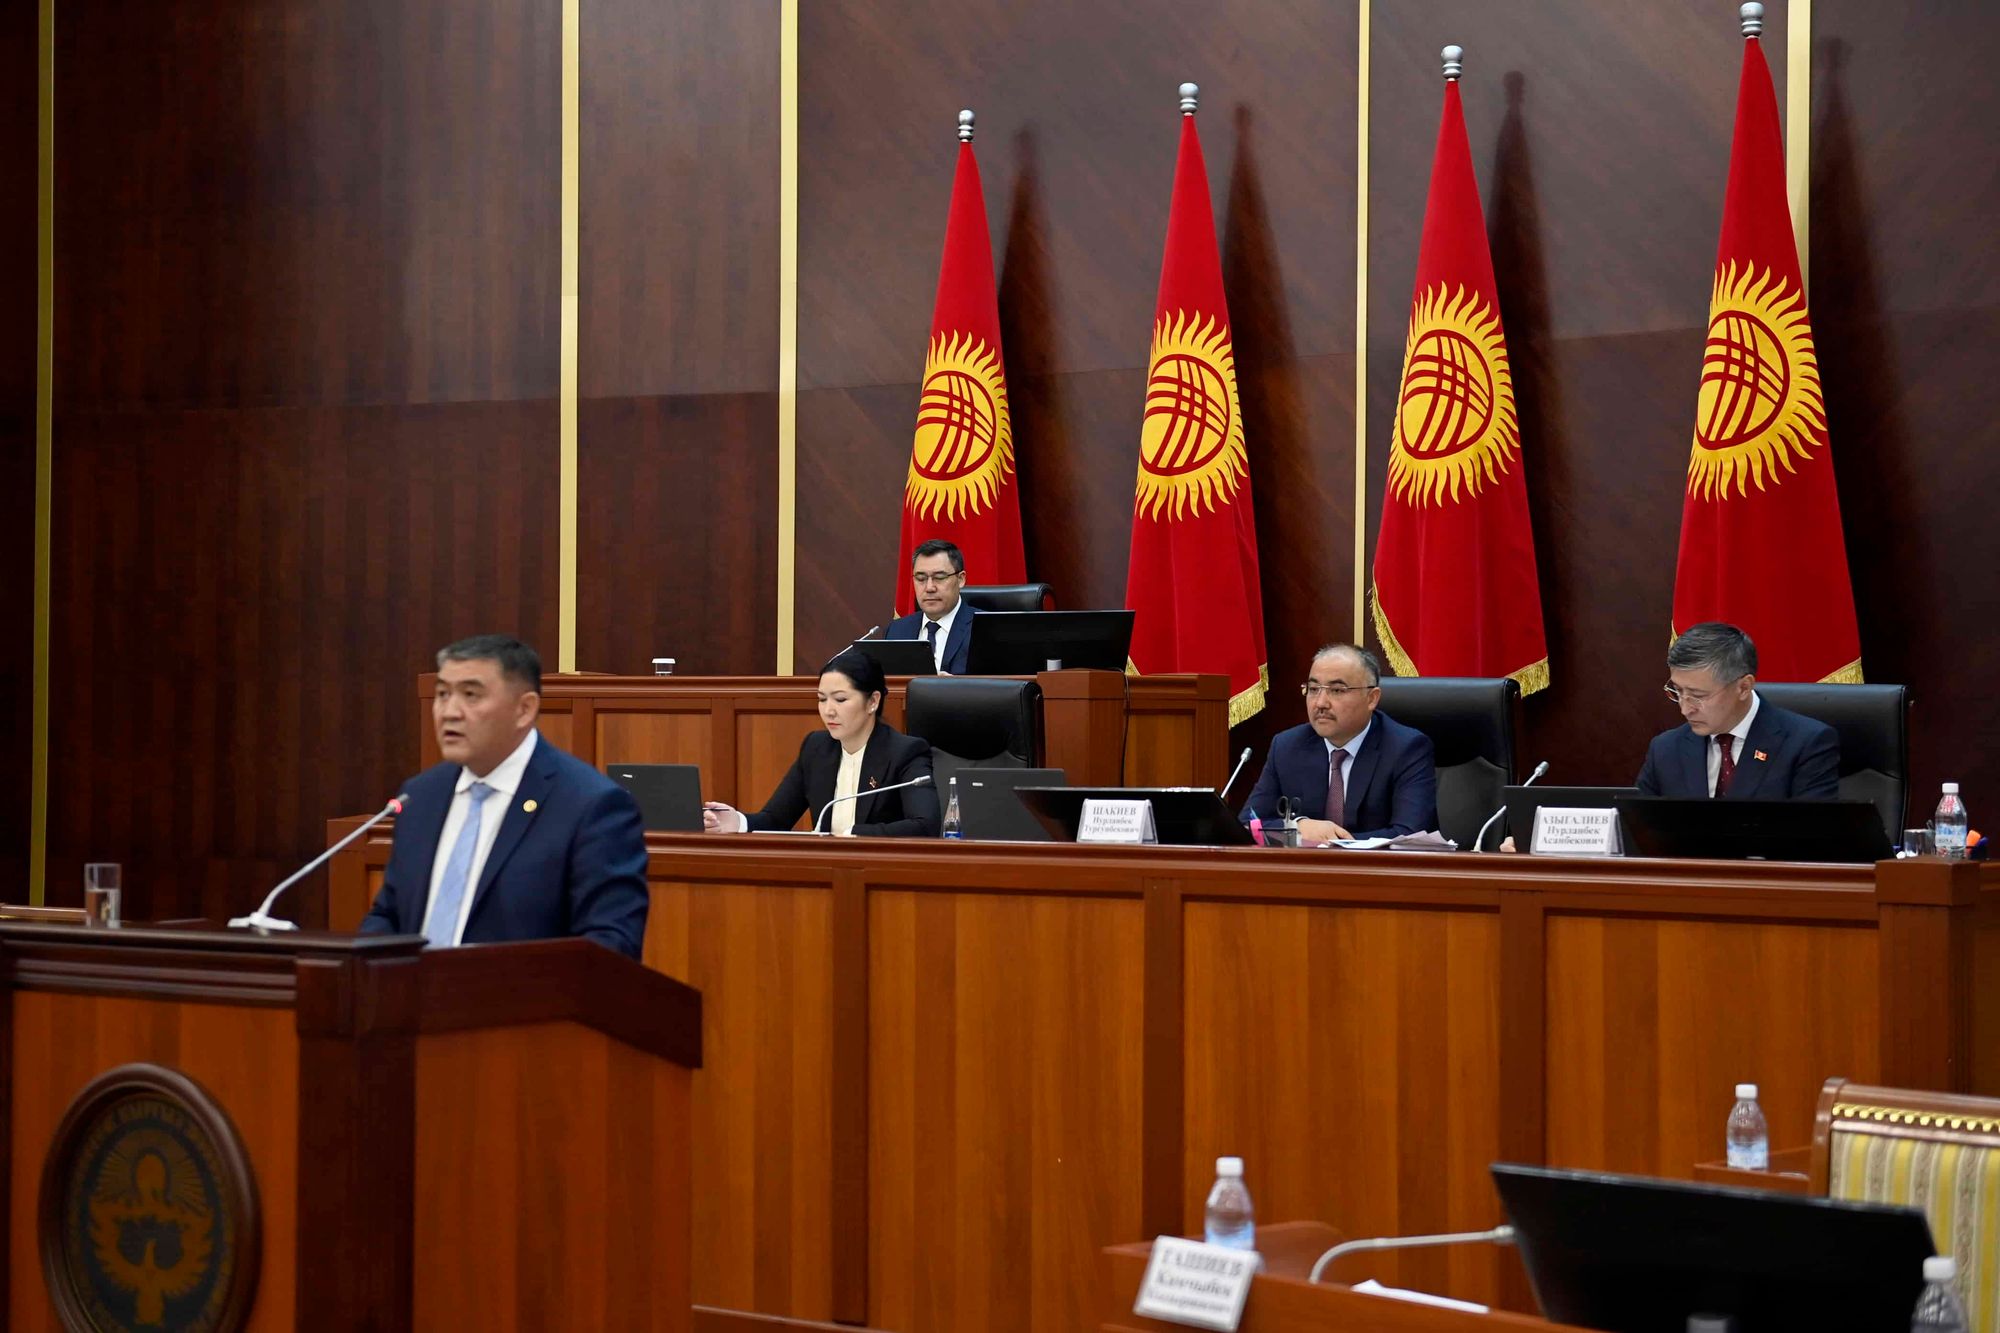 Ташиев рассказал какие участки останутся за Кыргызстаном по соглашению с РУз